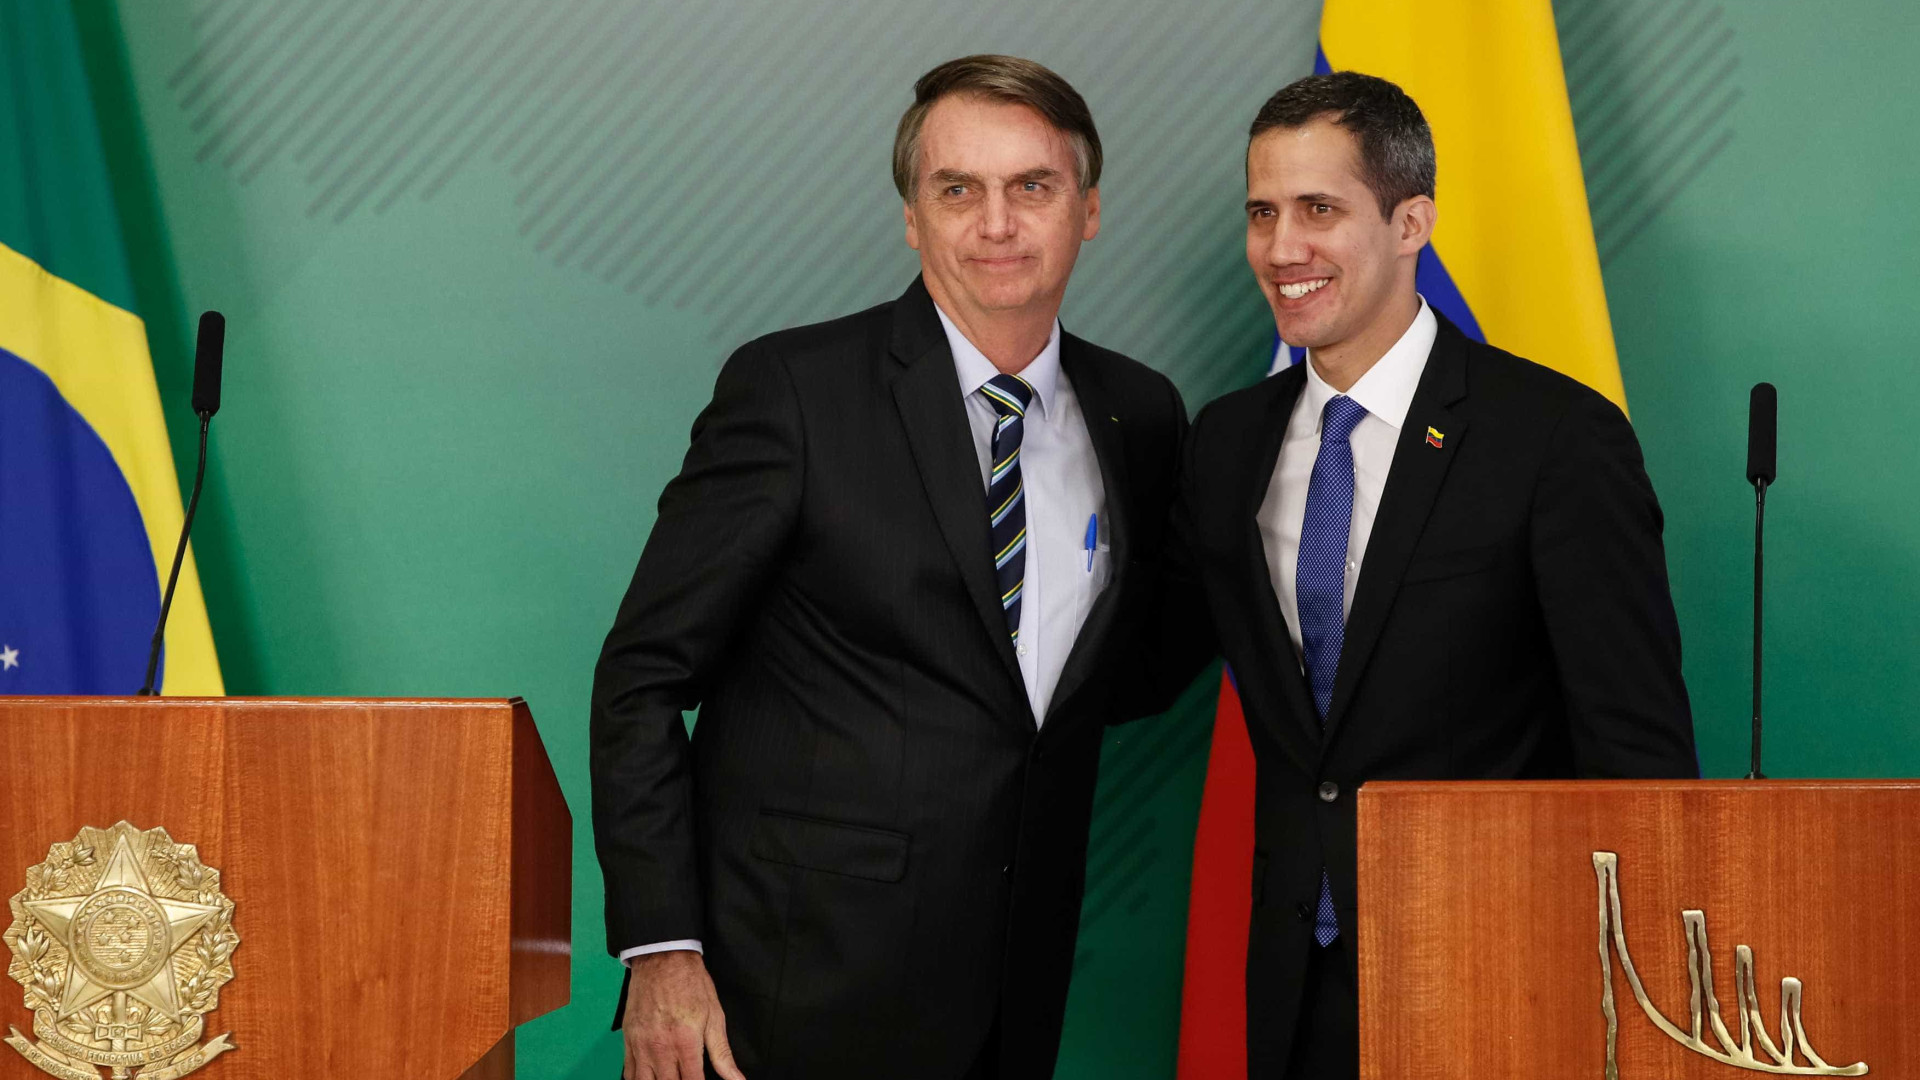 Bolsonaro desagrada militares ao receber GuaidÃ³ como chefe de Estado